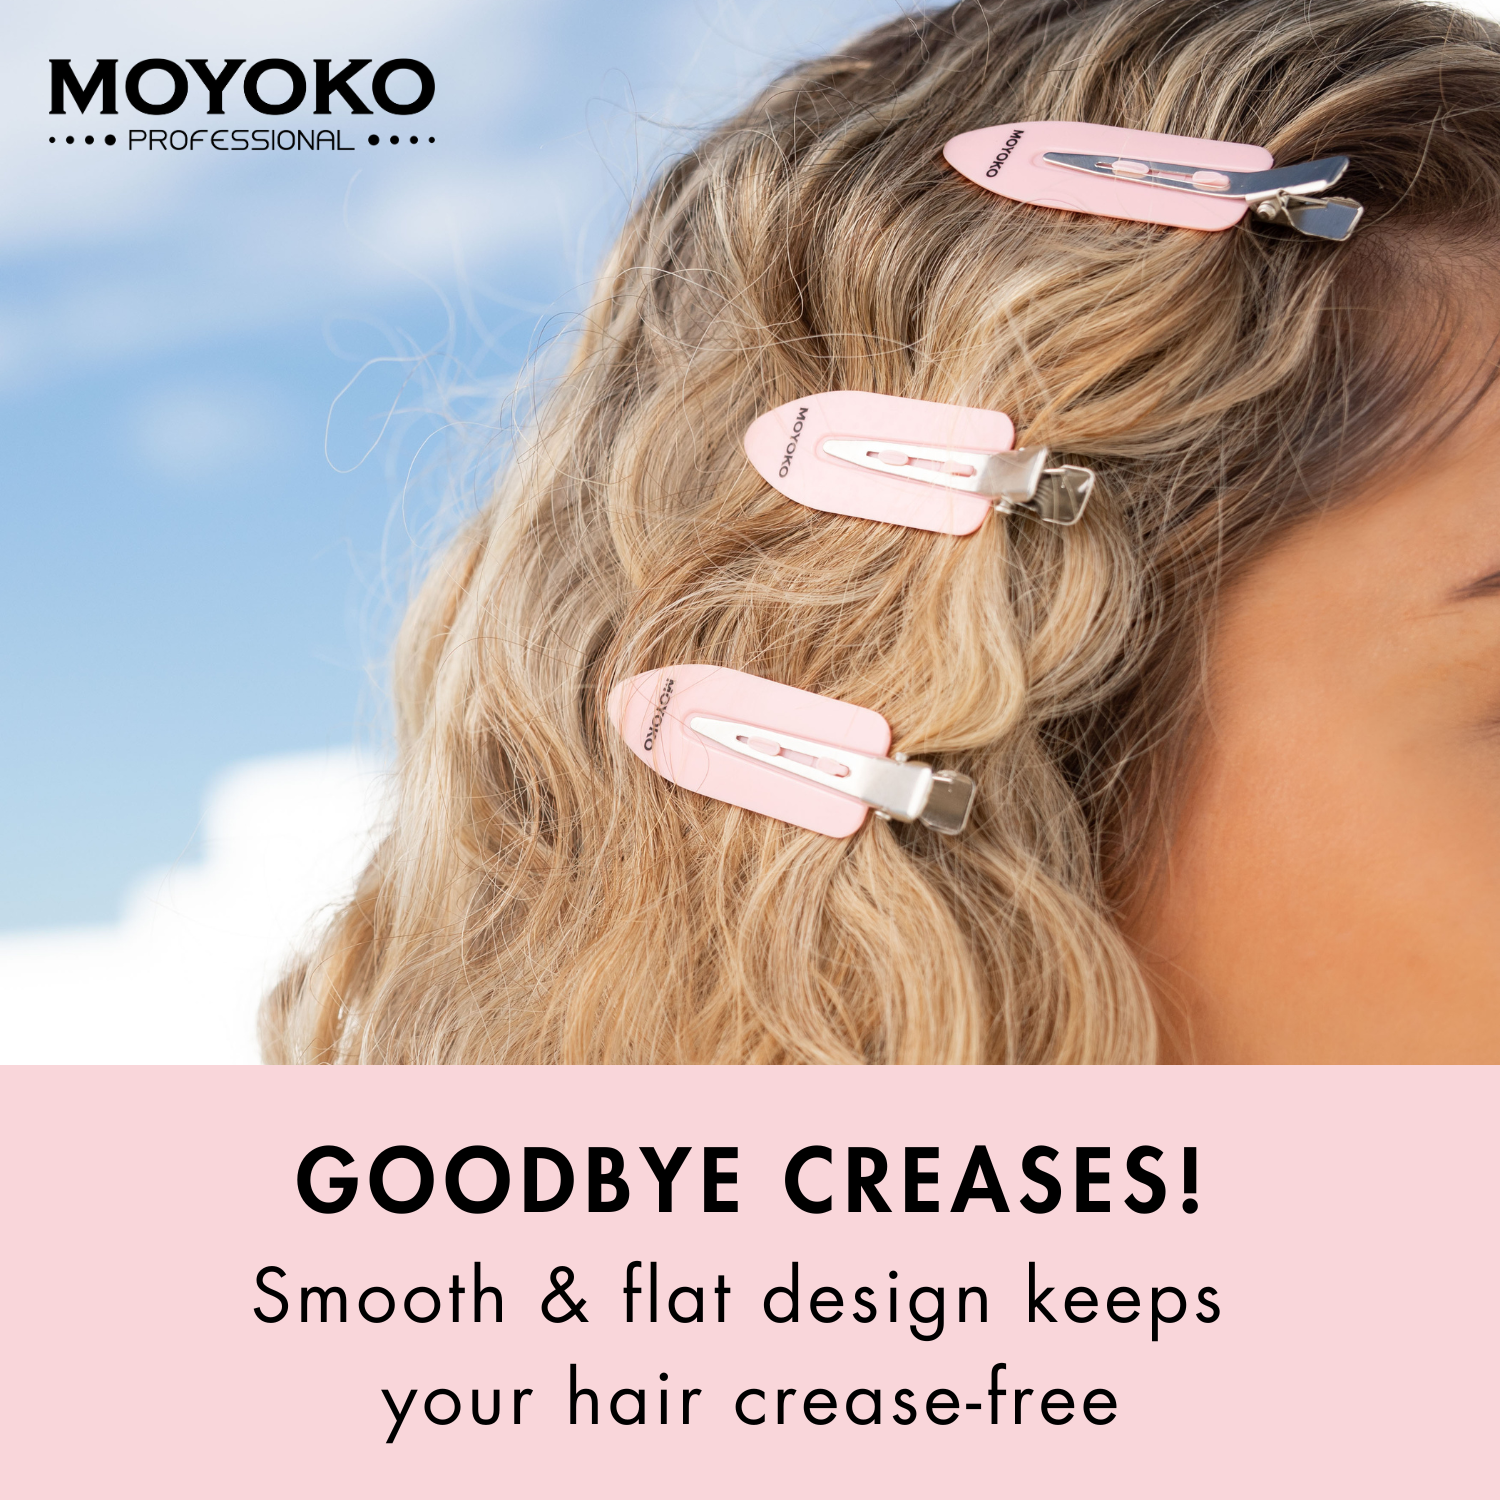 Moyoko Non-Crease Styling Clips